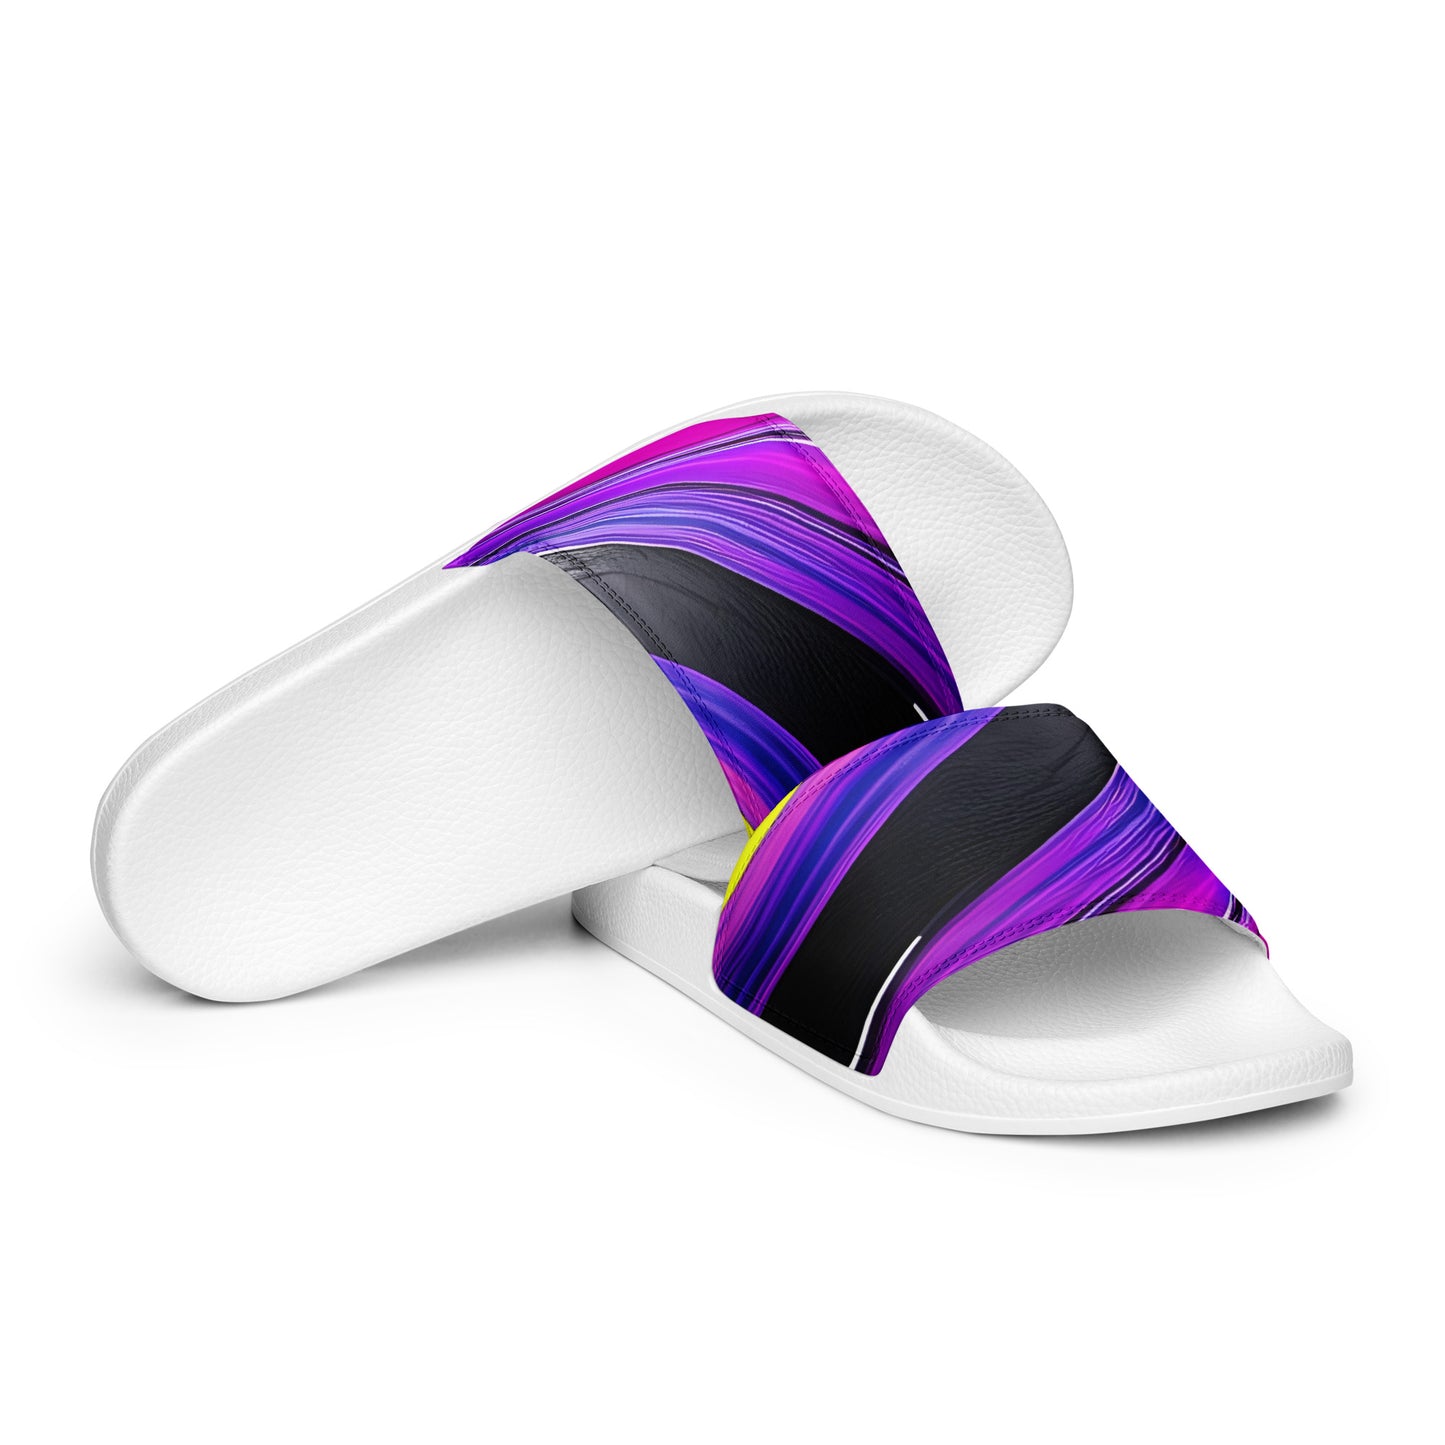 Women's slides - Purple Paint Pour Sandals Stylin' Spirit White 5.5 